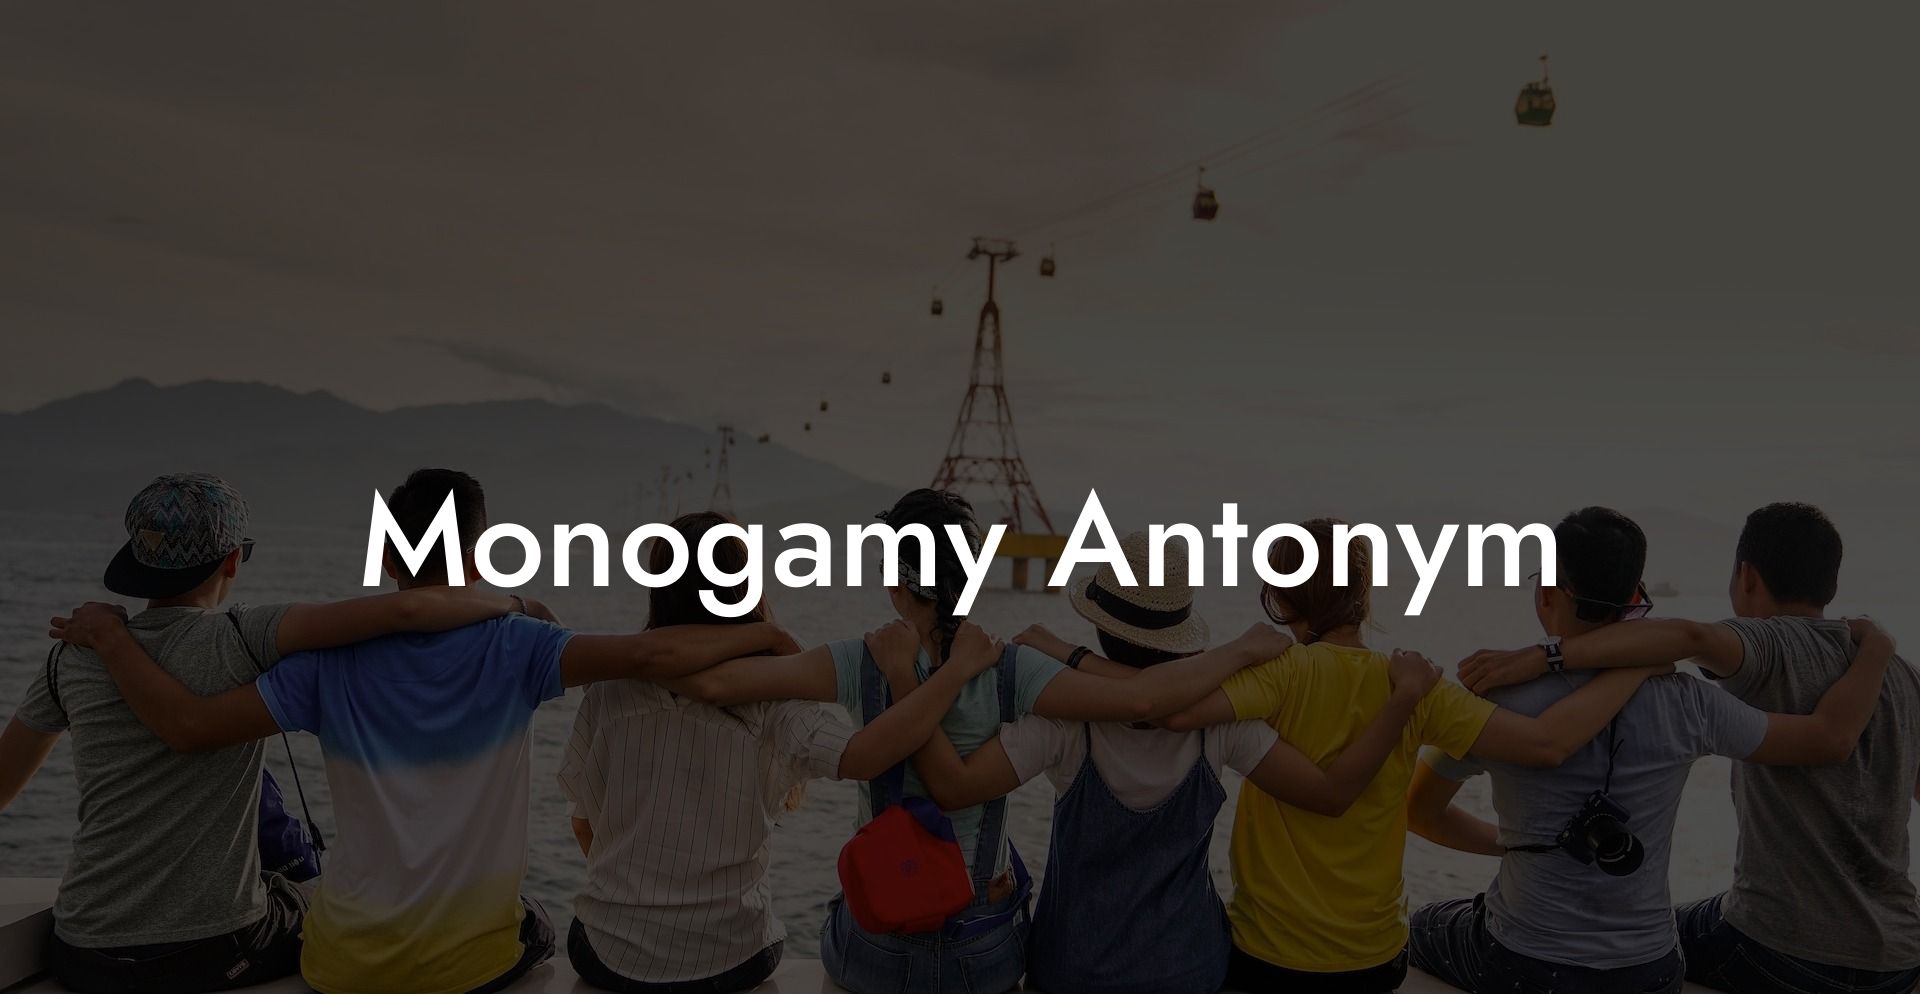 Monogamy Antonym